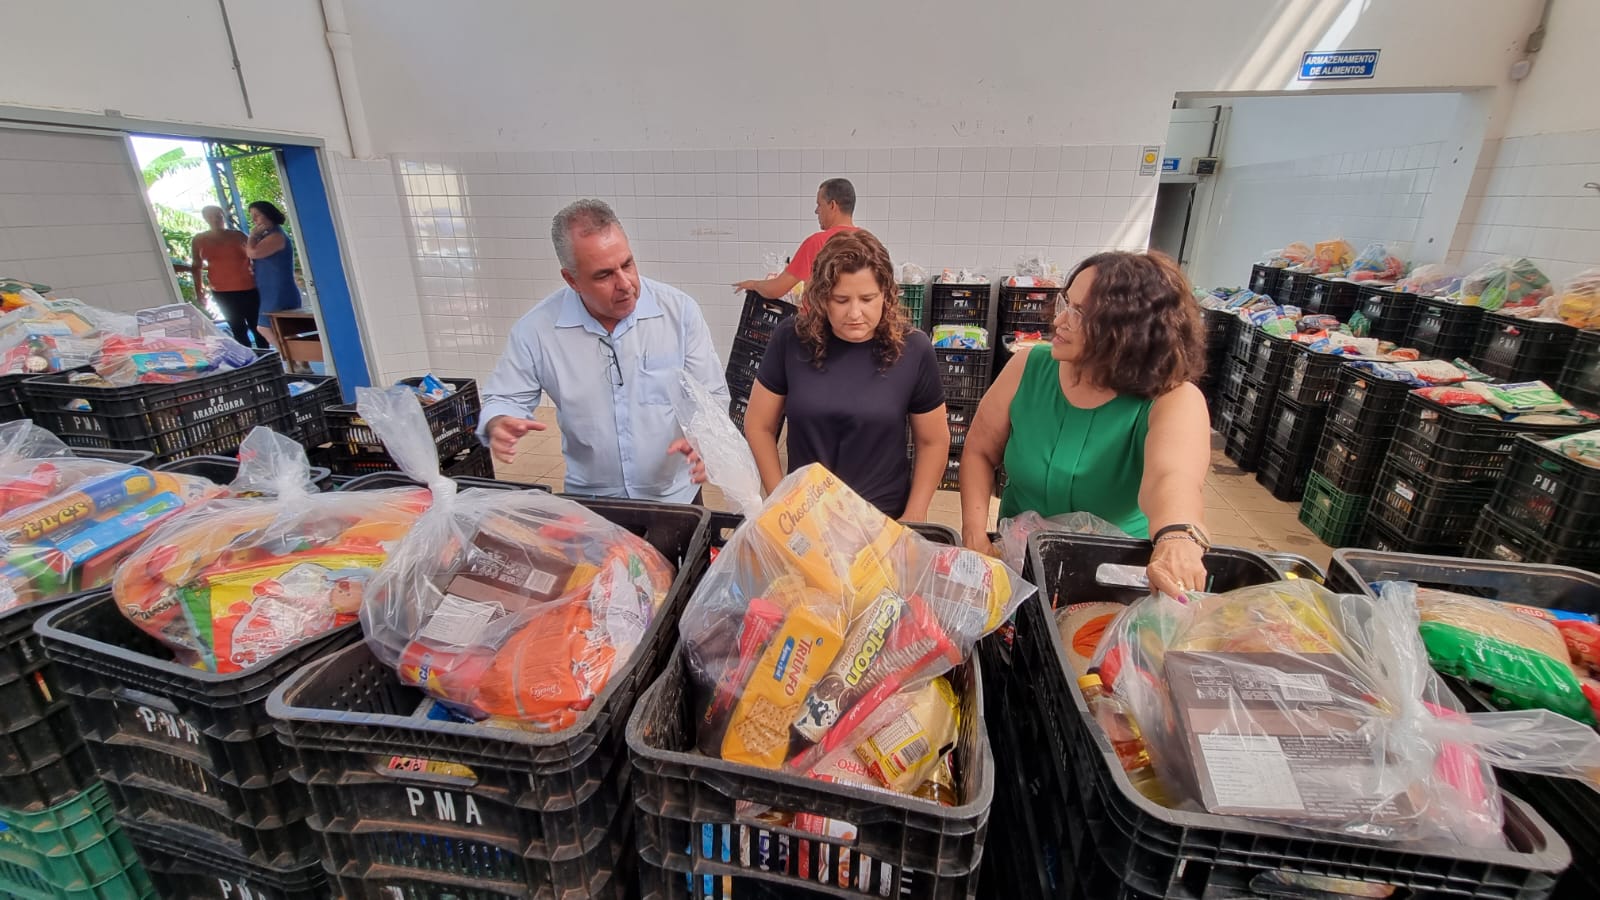 Entidades assistenciais recebem 7 toneladas de alimentos da campanha "Natal Sem Fome"